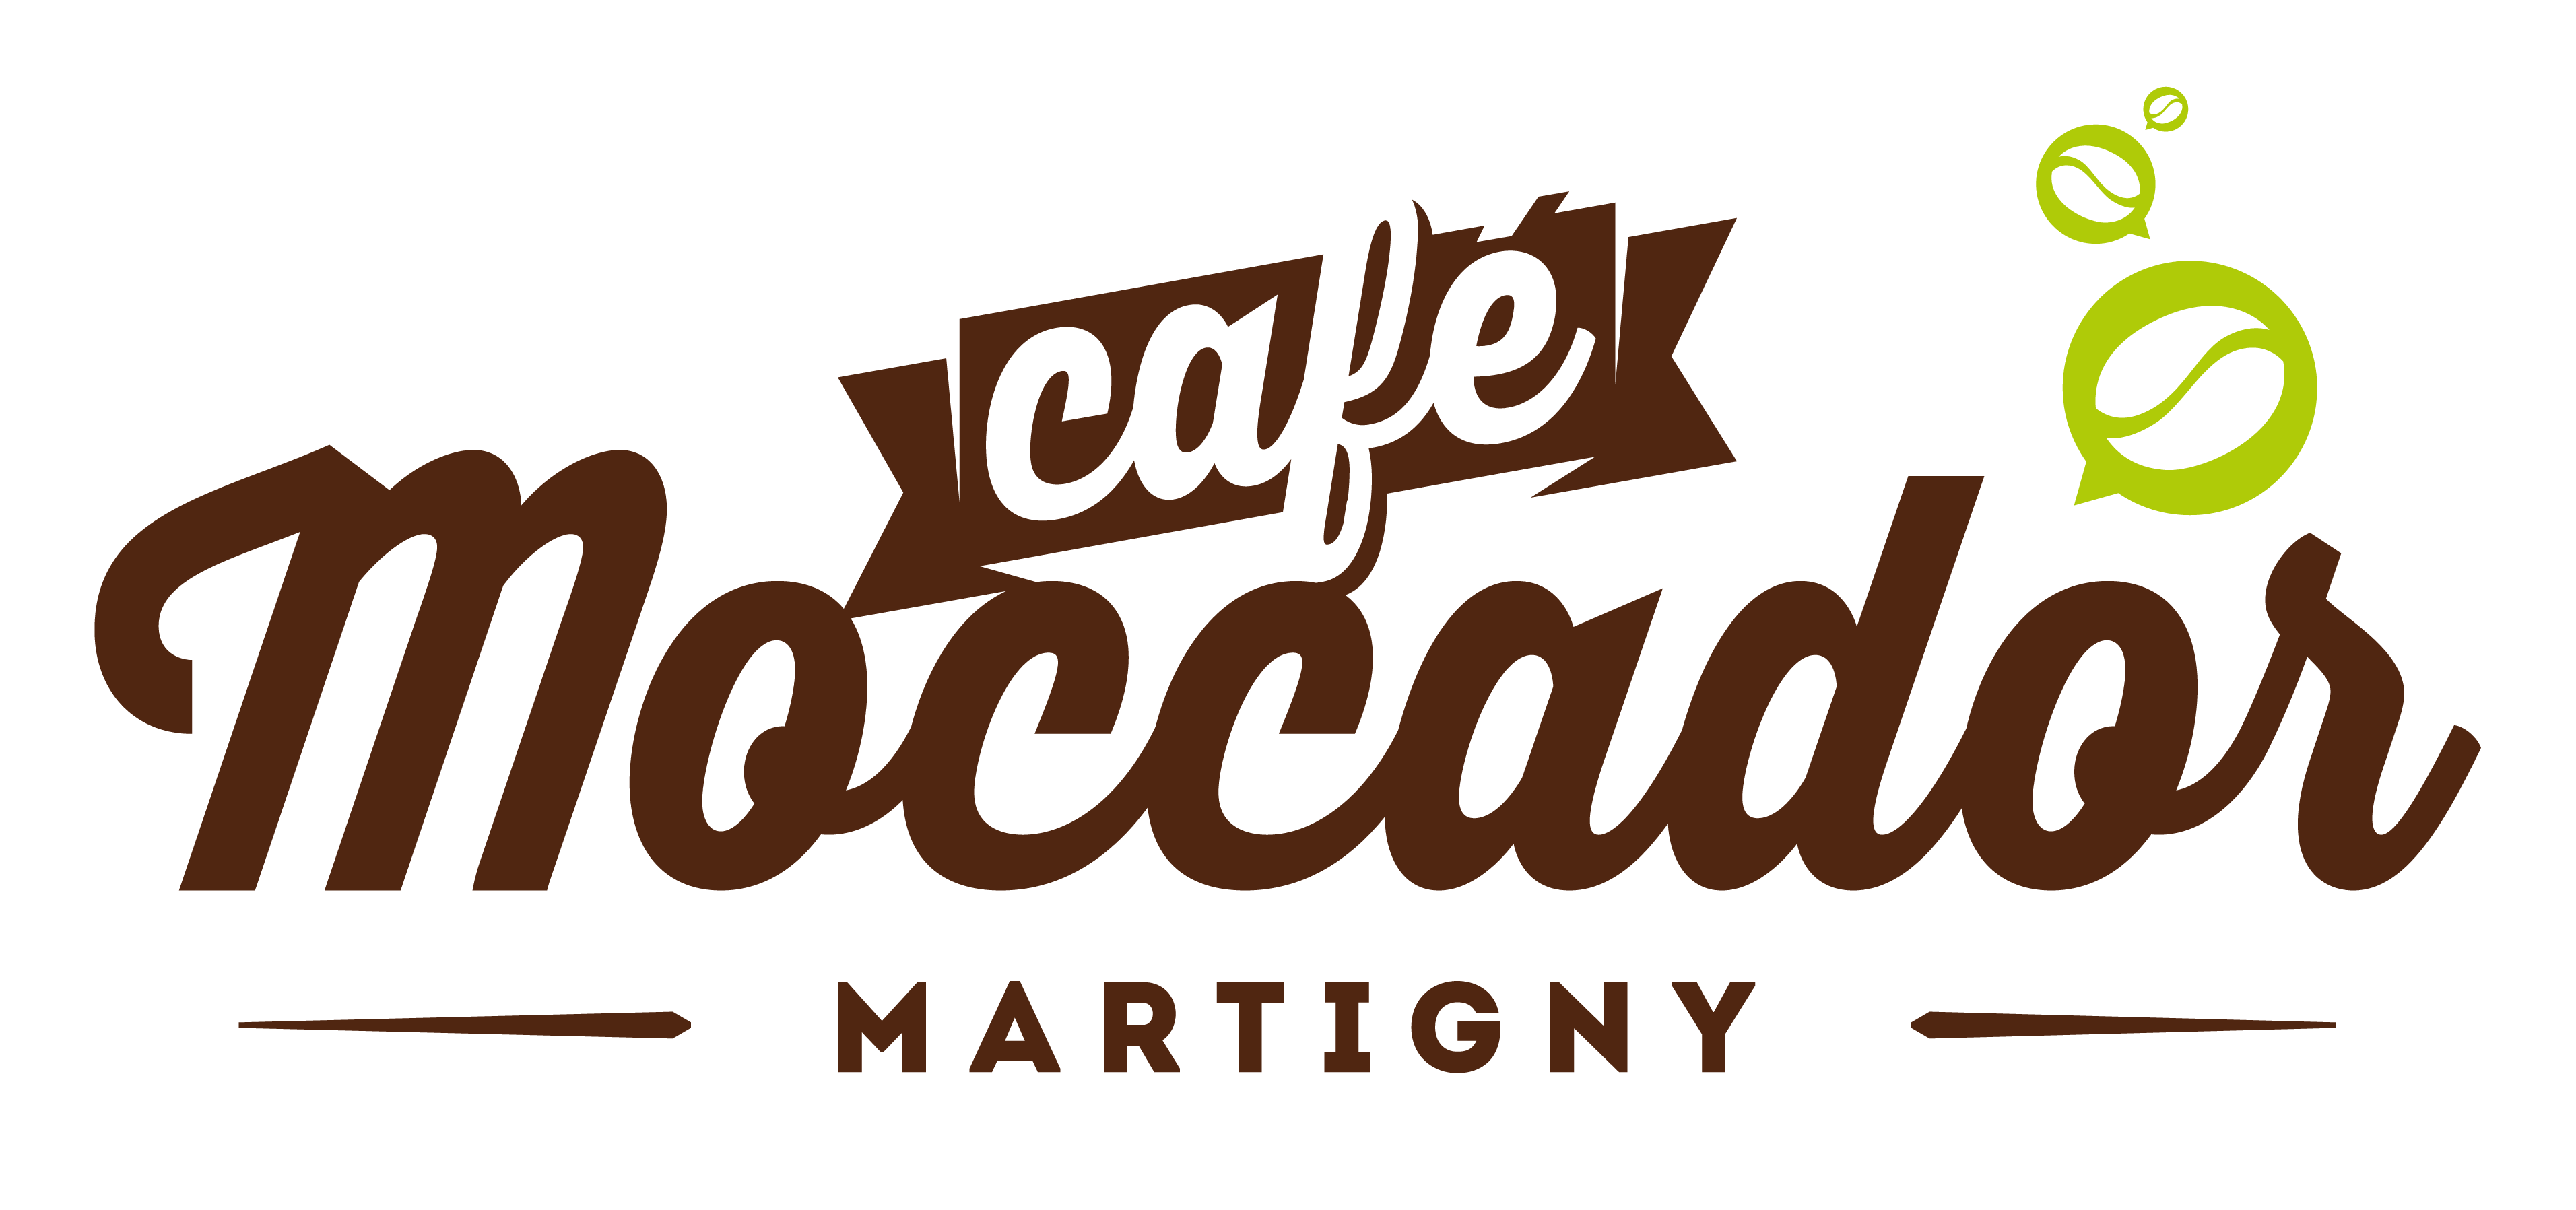 Café Moccador SA